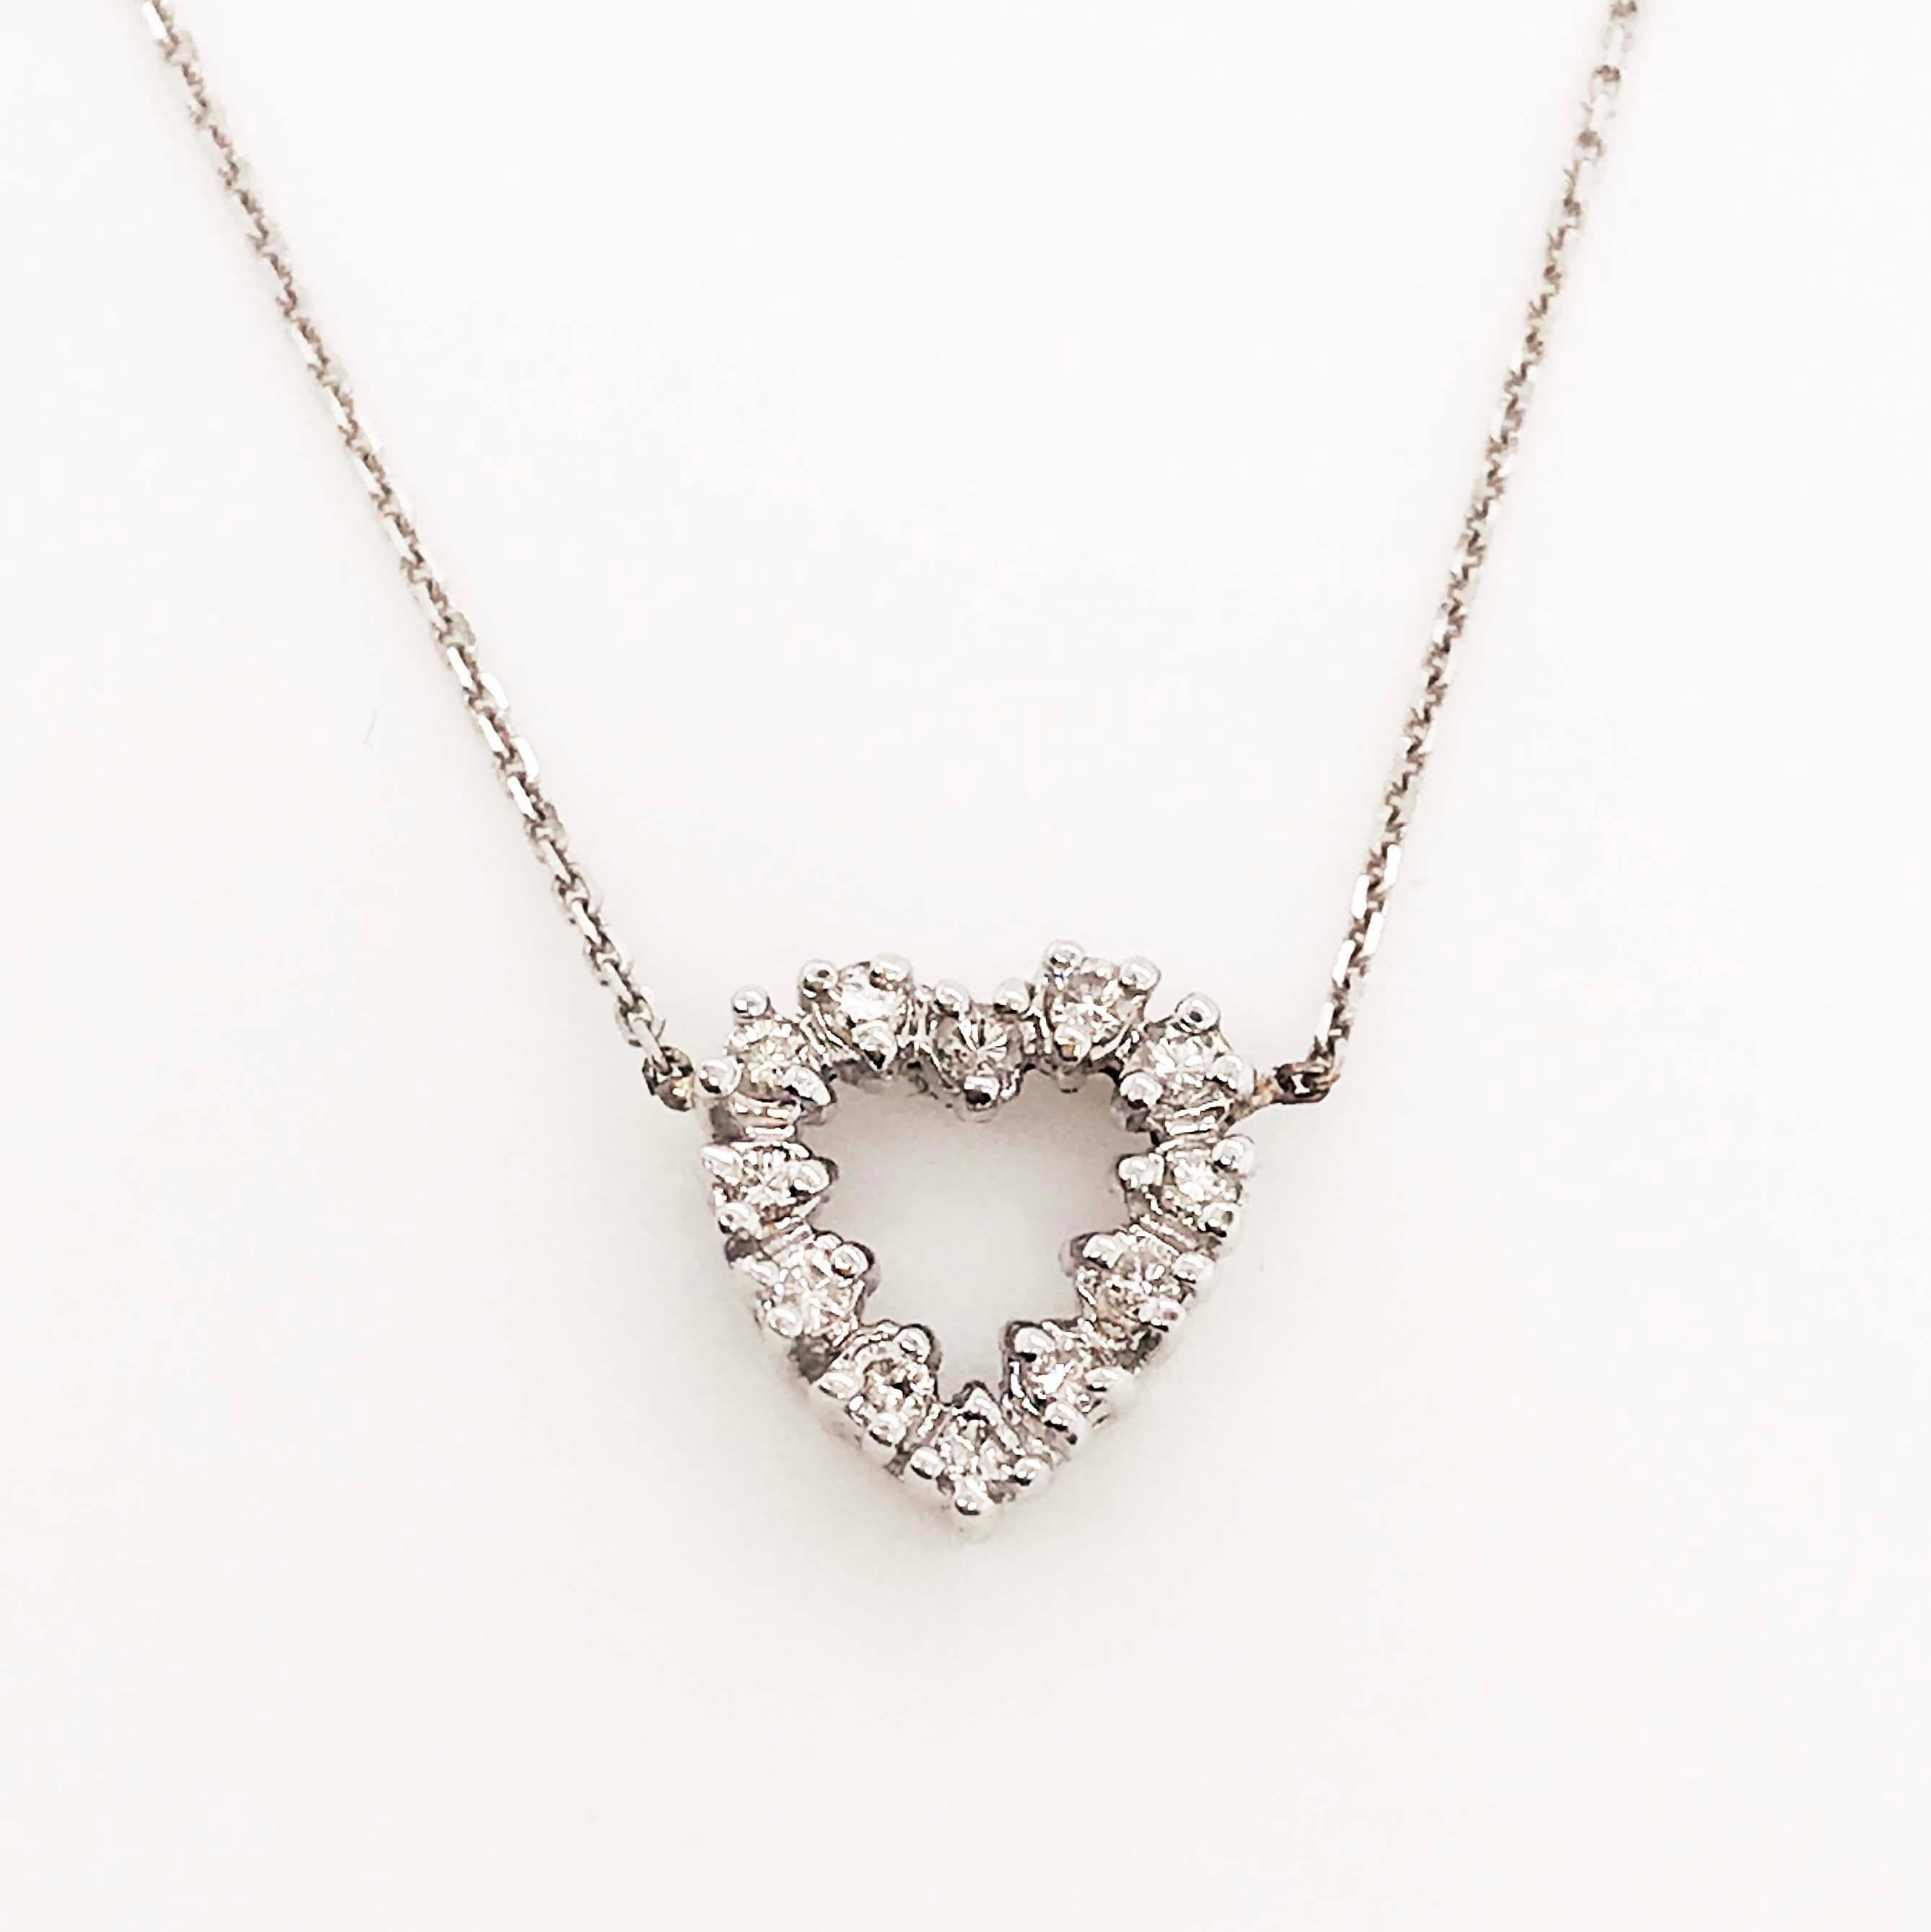 Round Cut Diamond Heart Necklace, 14 Karat White Gold Diamond Heart Necklace